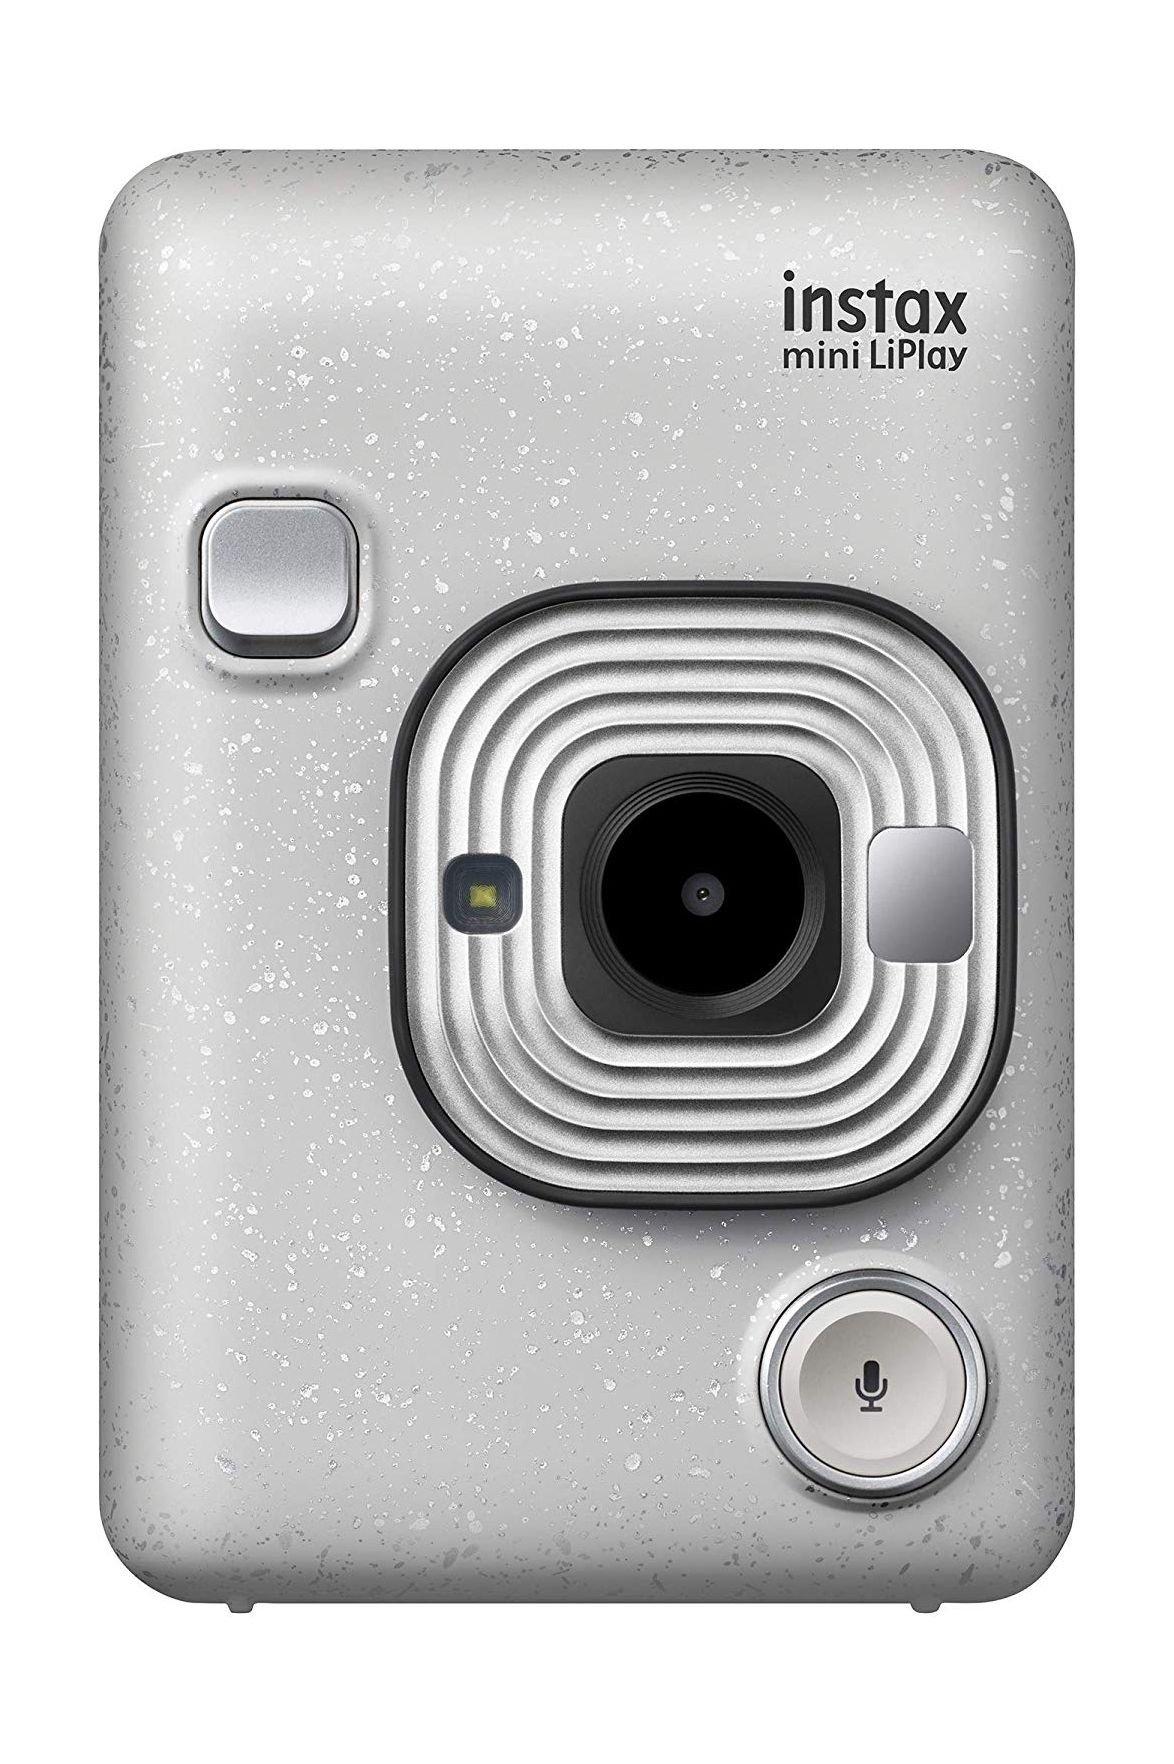 Fujifilm instax mini liplay instant camera - stone white price in